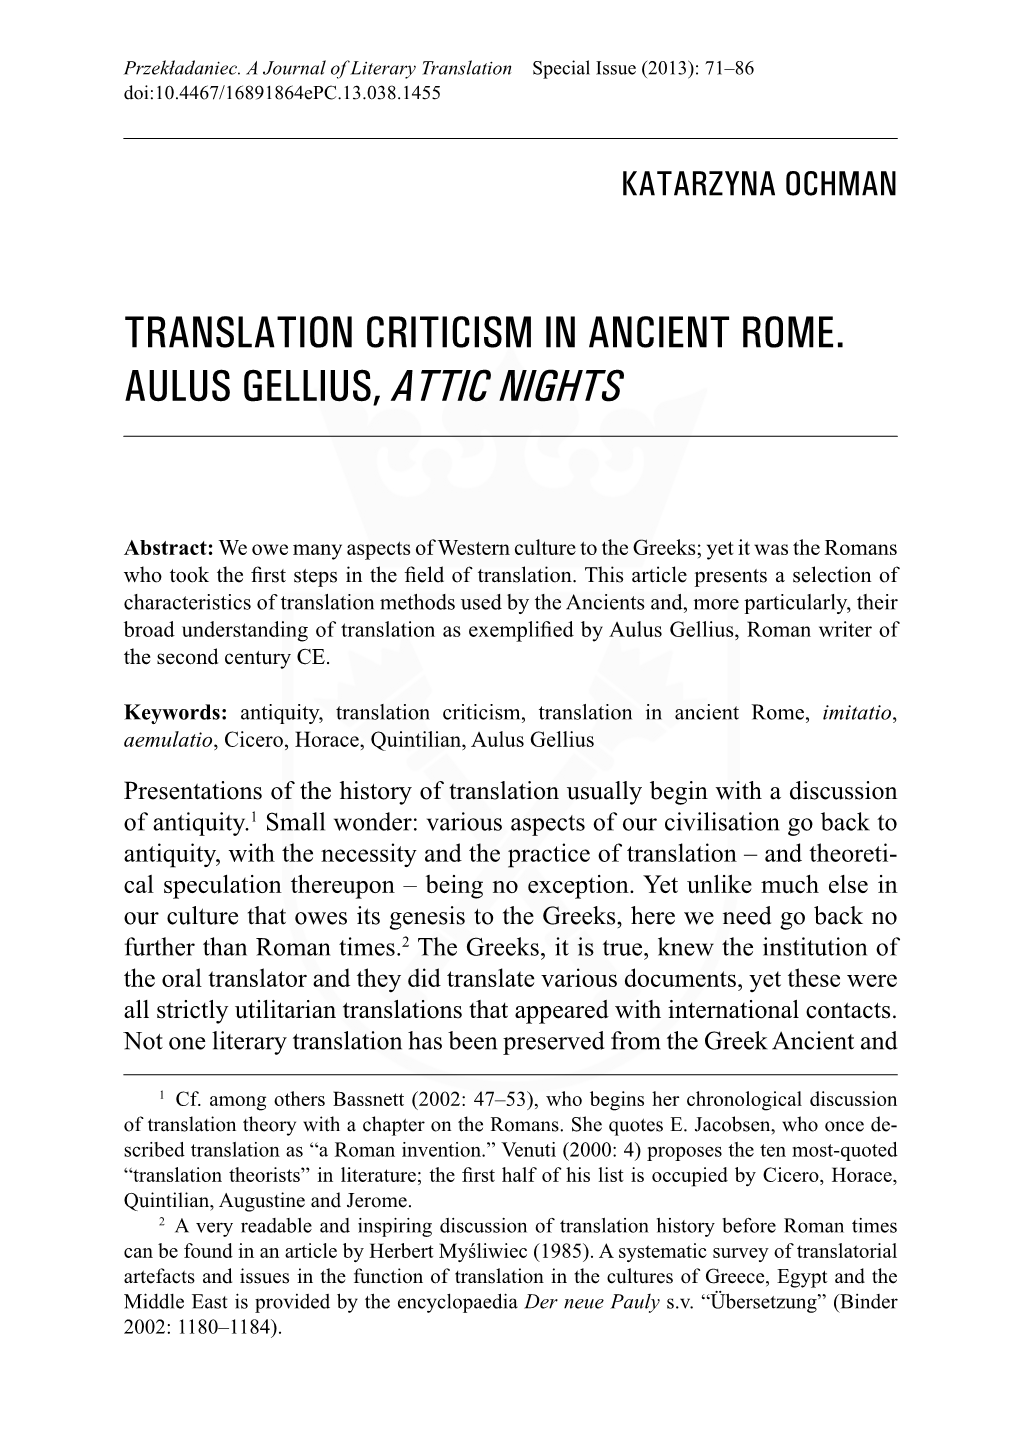 Translation Criticism in Ancient Rome. Aulus Gellius, Attic Nights